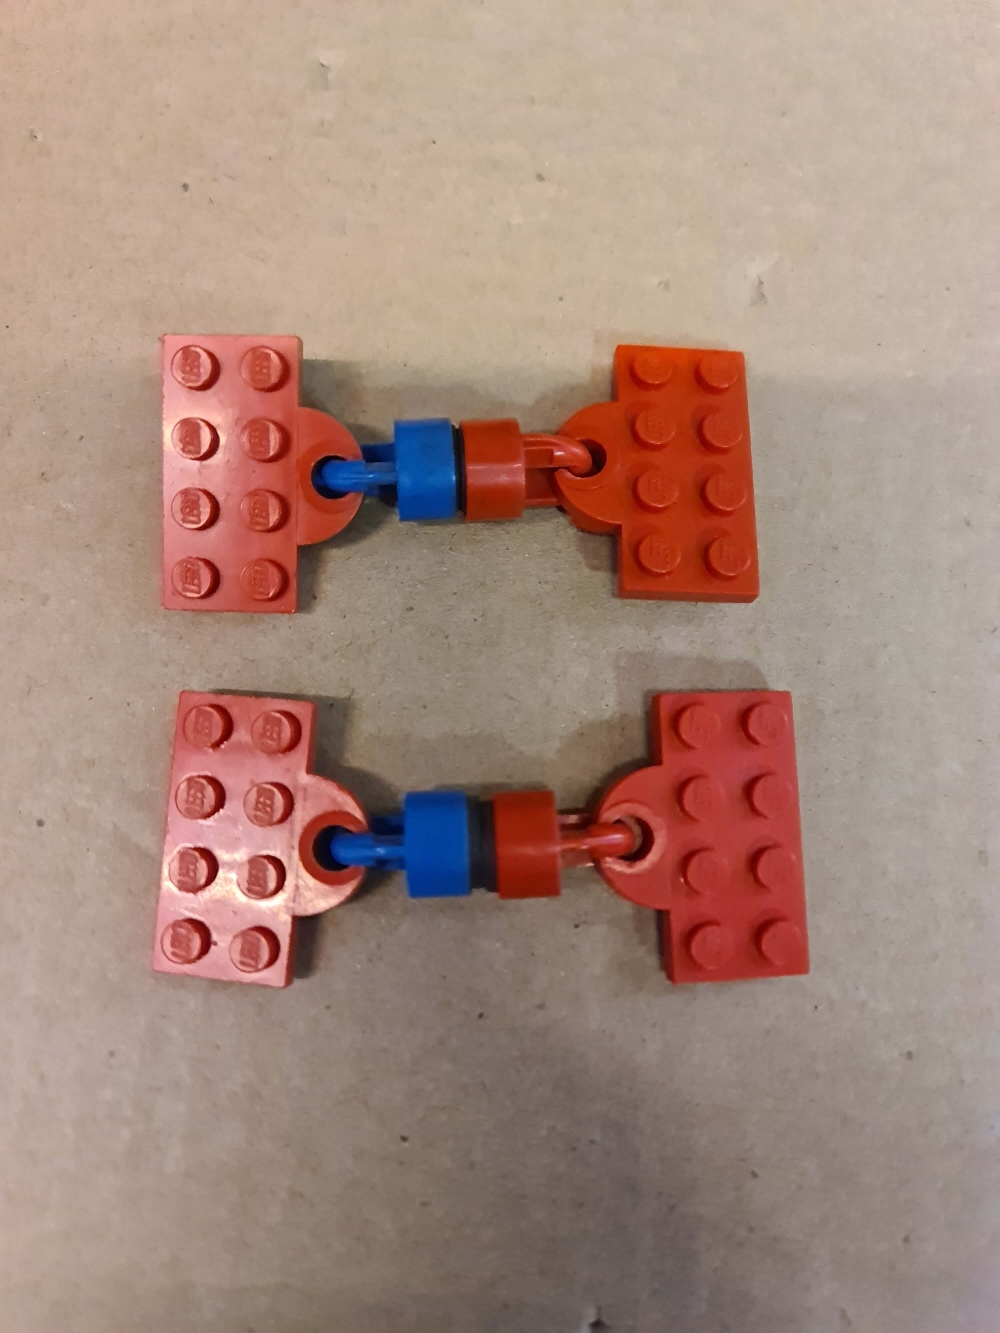 Sett 1108 fra Lego Service Packs : Train serien.
komplett.